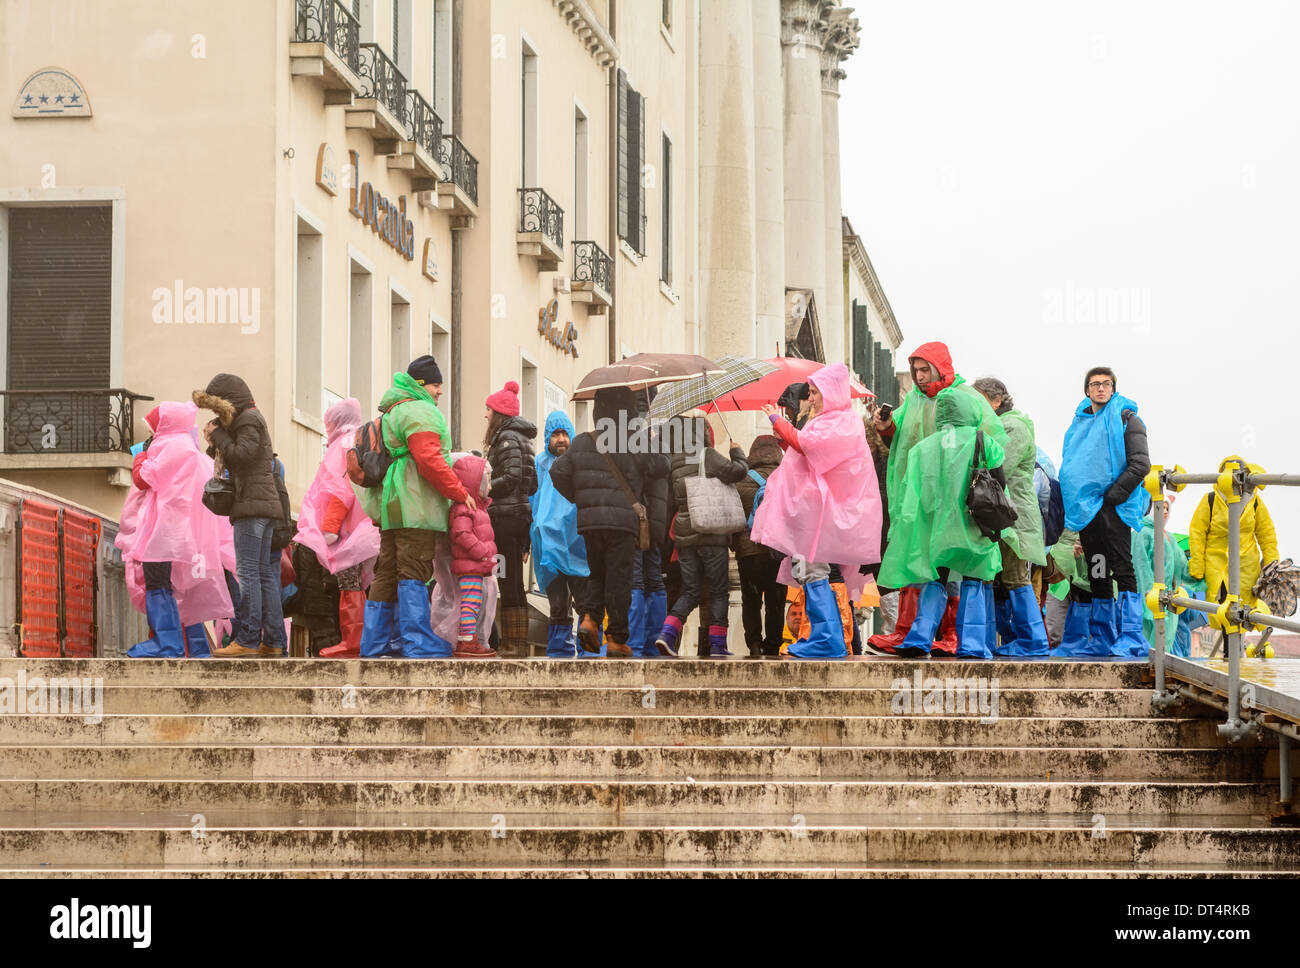 Venedig, Italien. Touristen und Kinder bei nassem Wetter Kleidung und Regen Stiefel, auf einer Brücke im Regen stehen. Stockfoto